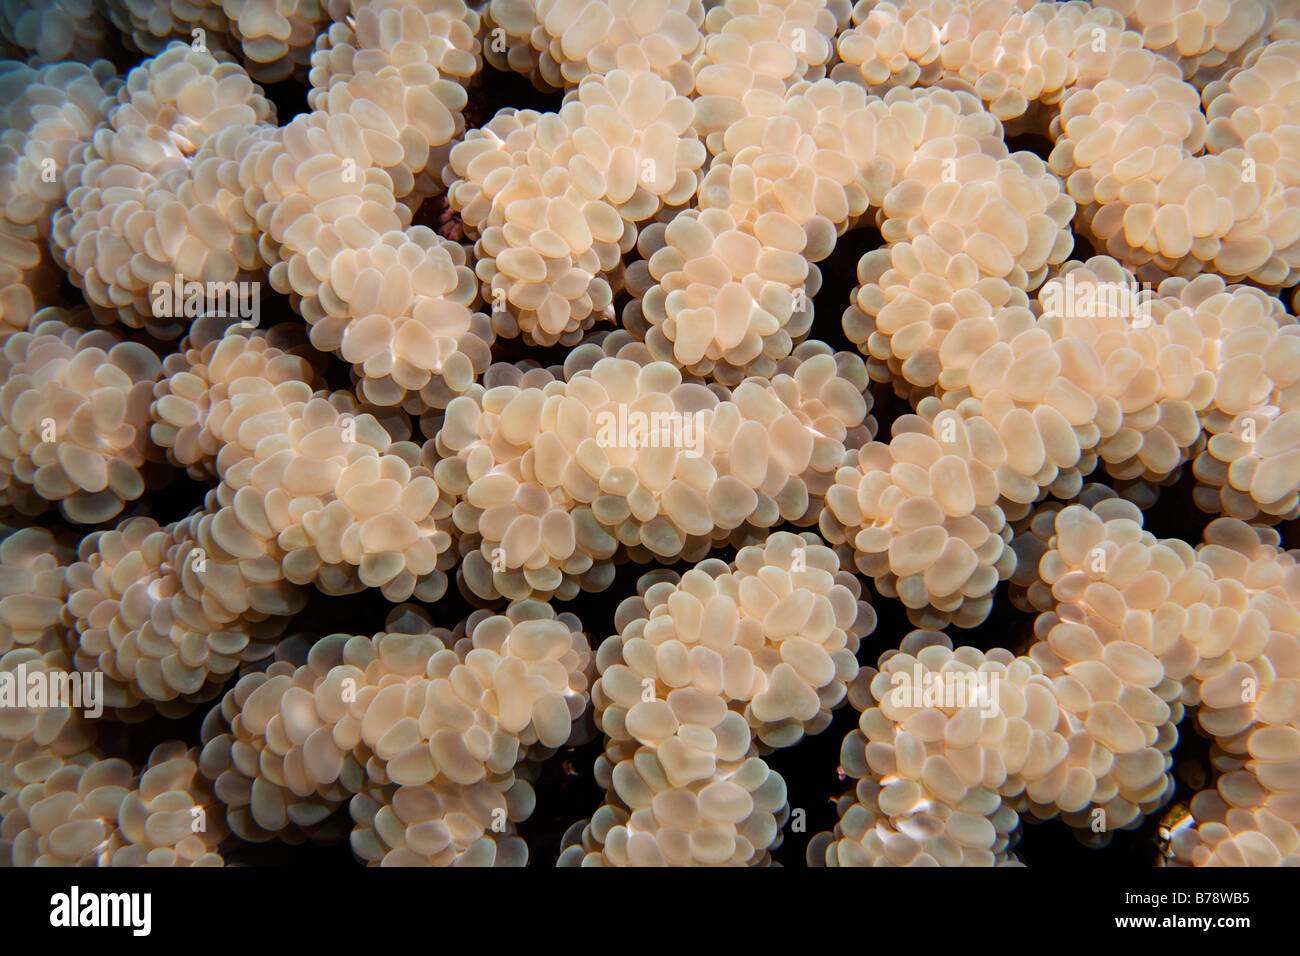 Dettaglio di una bolla corallo (Plerogyra sinuosa), Daedalus Reef, Hurghada, Mar Rosso, Egitto, Africa Foto Stock